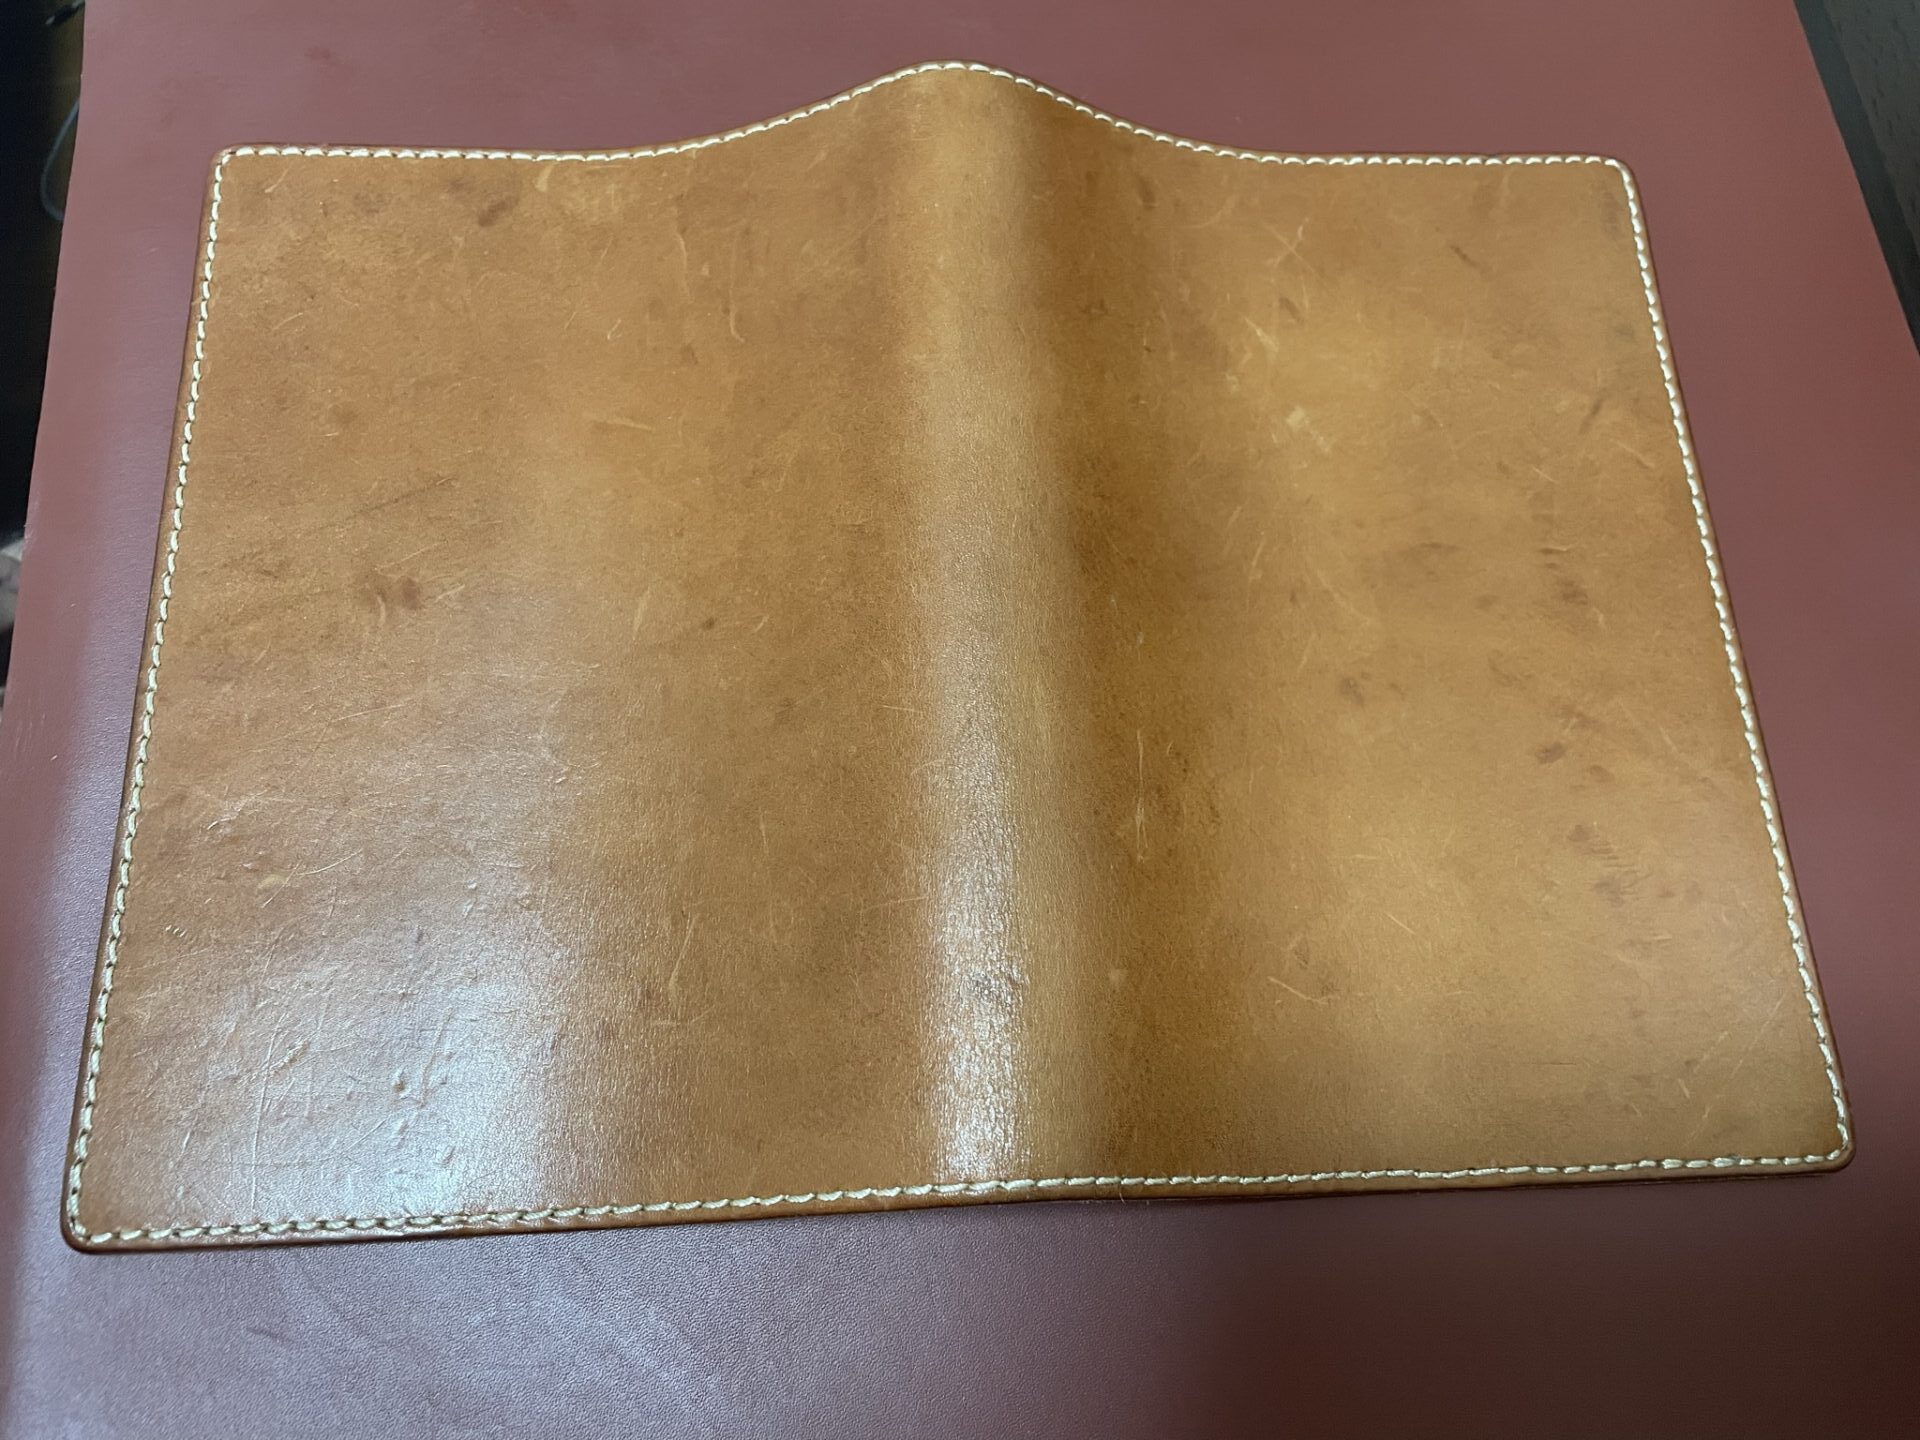 エイジングレポート】HERZのノートカバー 鞄で揉まれて24か月 はじめての革製品